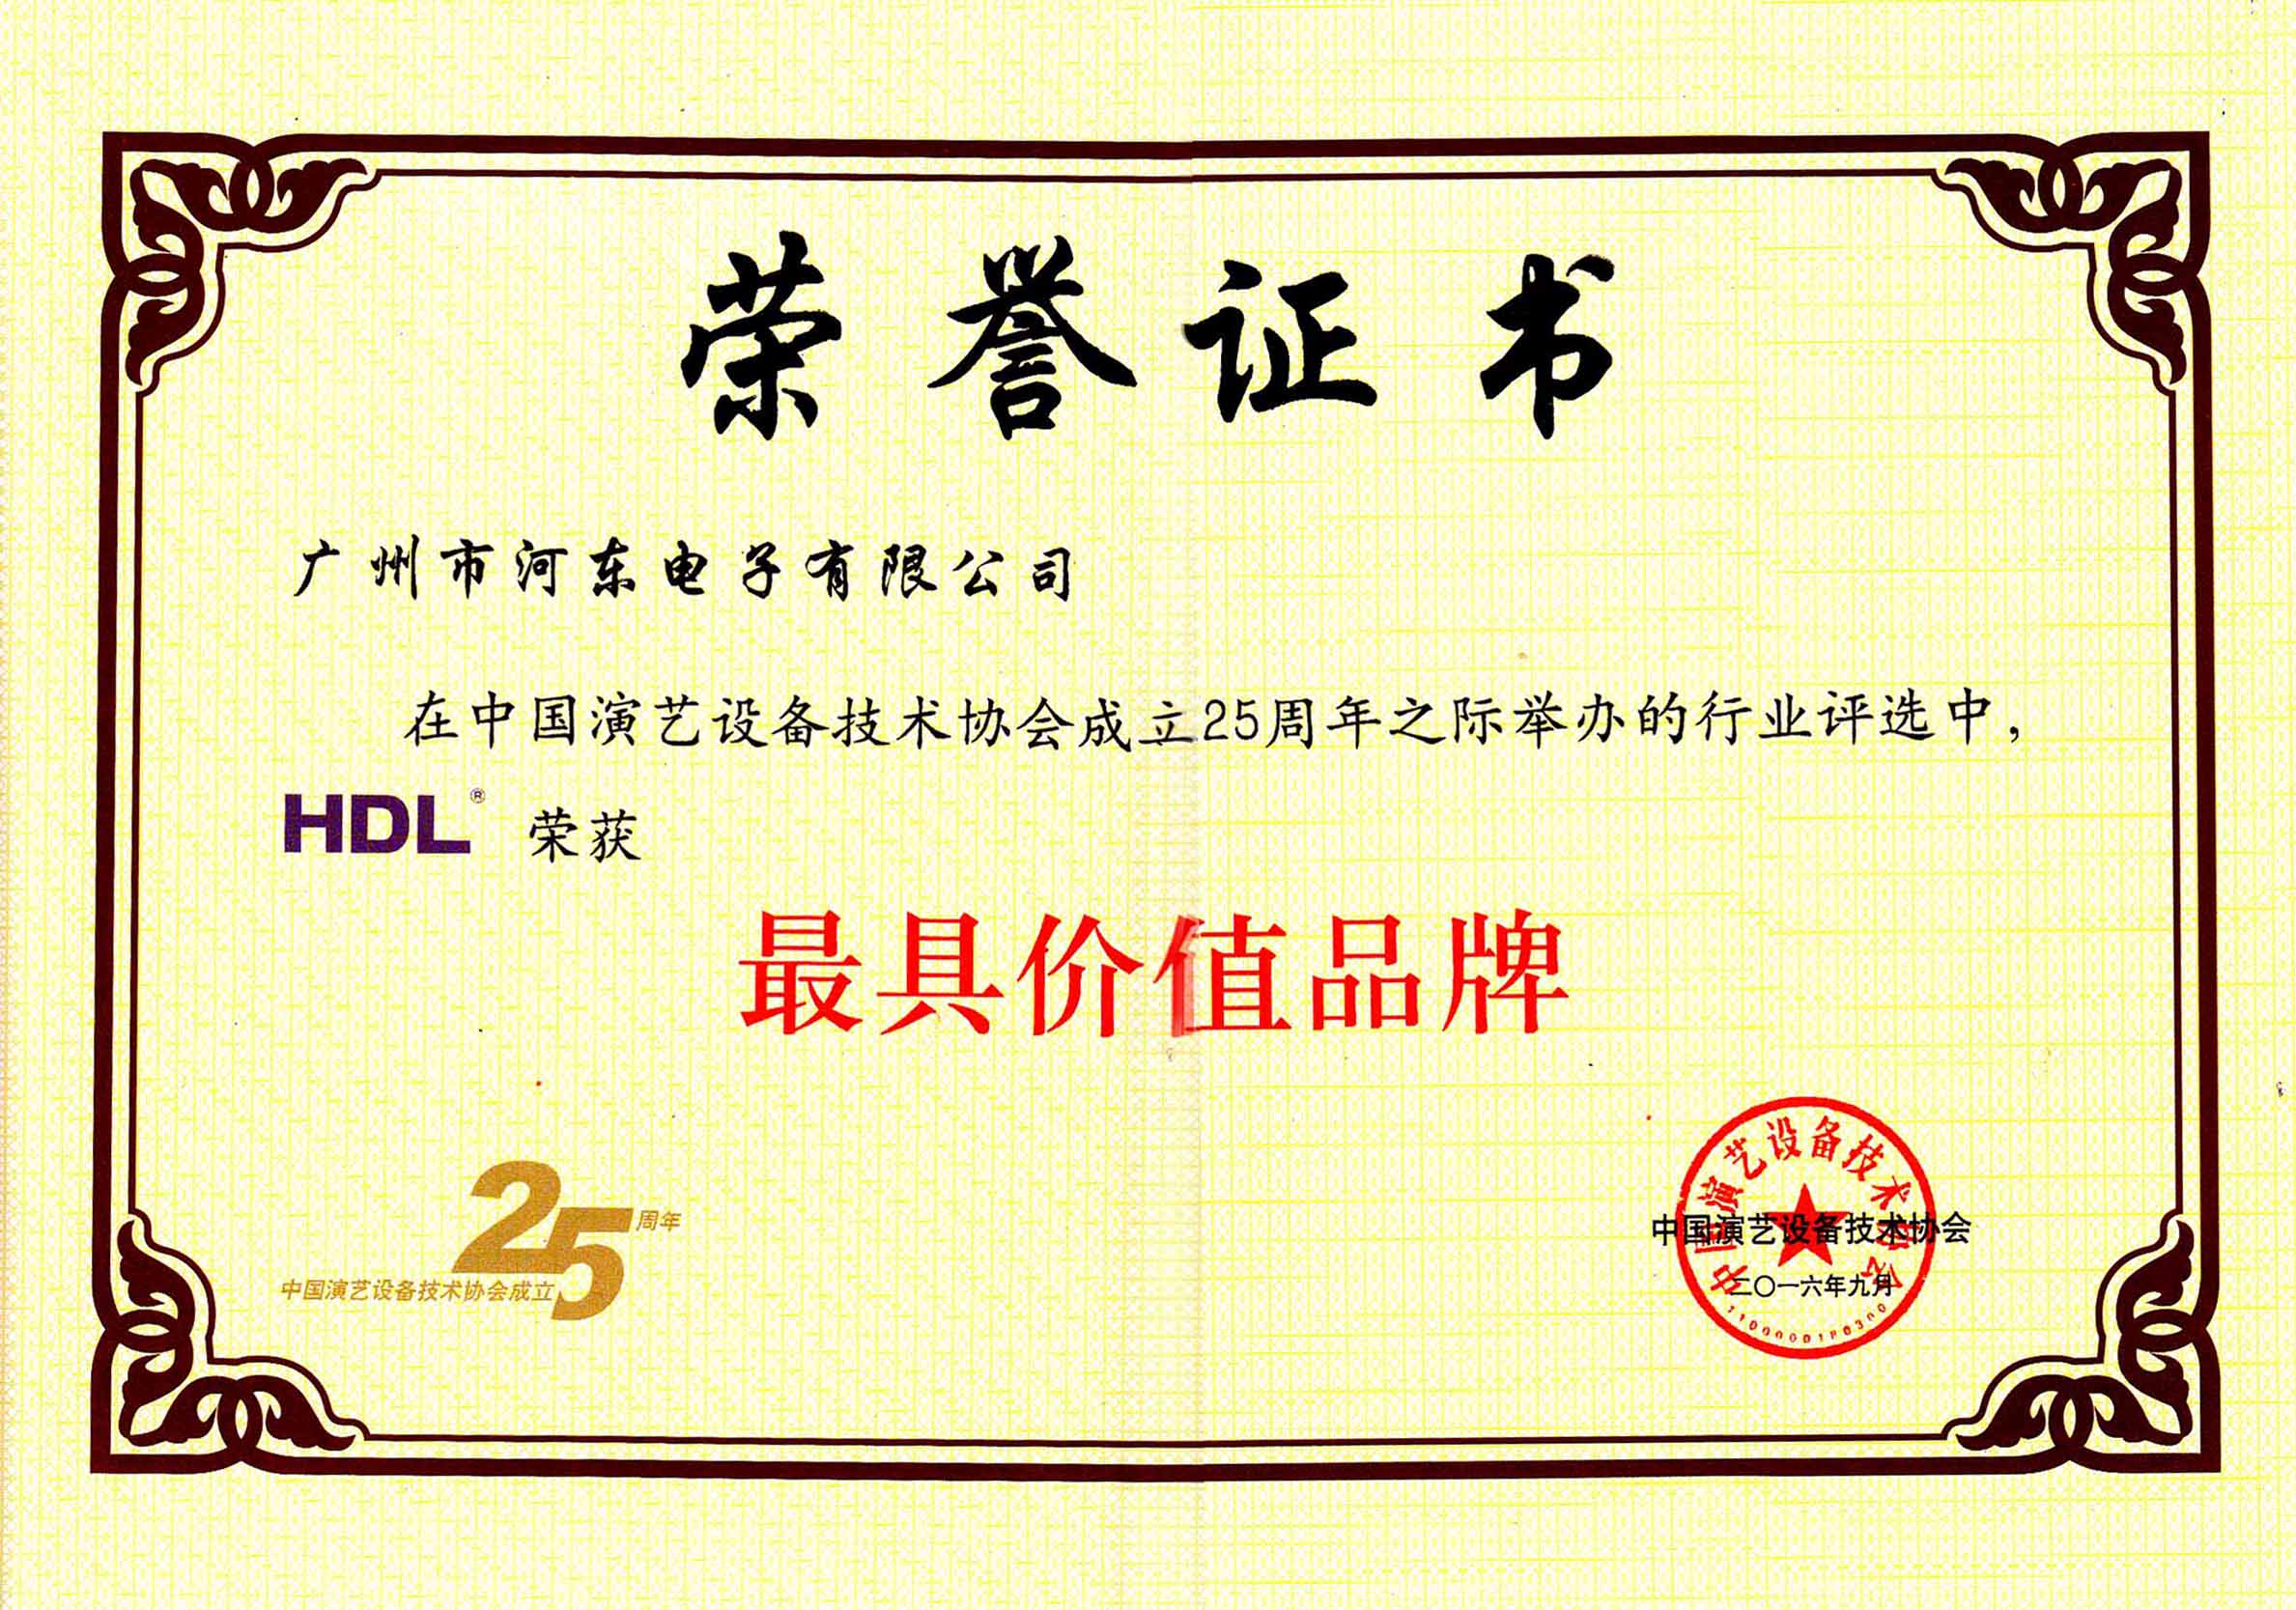 中国演艺设备技术协会最具价值品牌奖